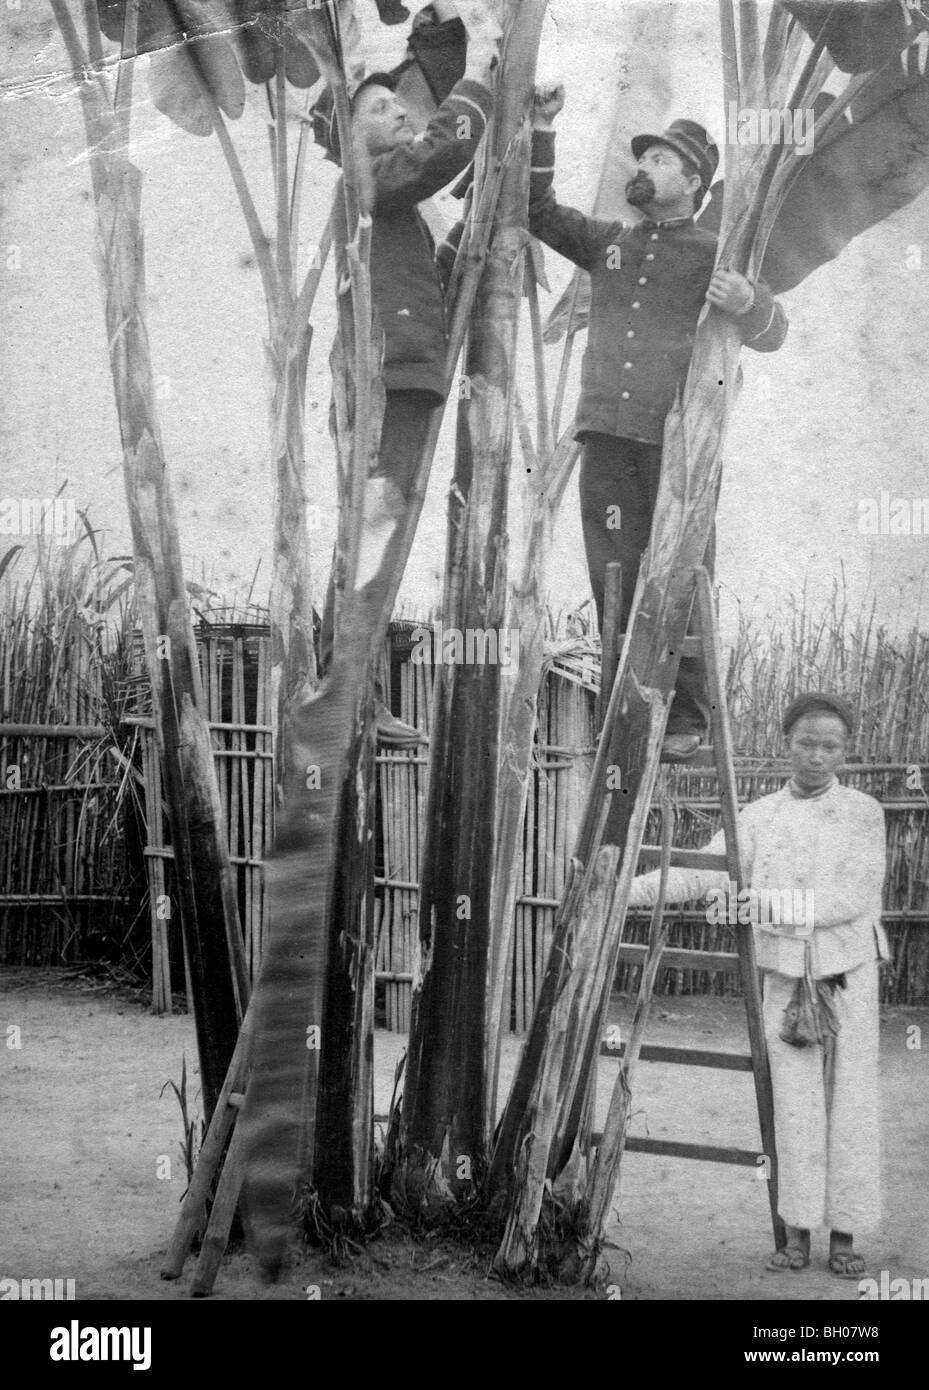 Dos soldados franceses que trabajan con un nativo vietnamita sujetando la escalera para ellos en Vietnam o Camboya circa 1900. Foto de stock